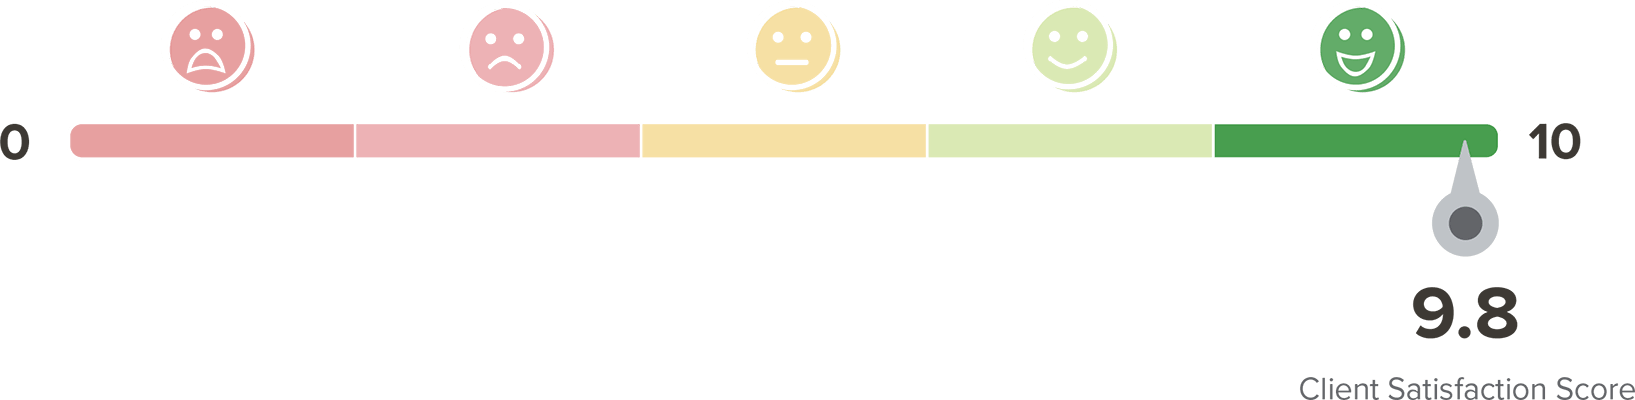 Client Satisfaction Score